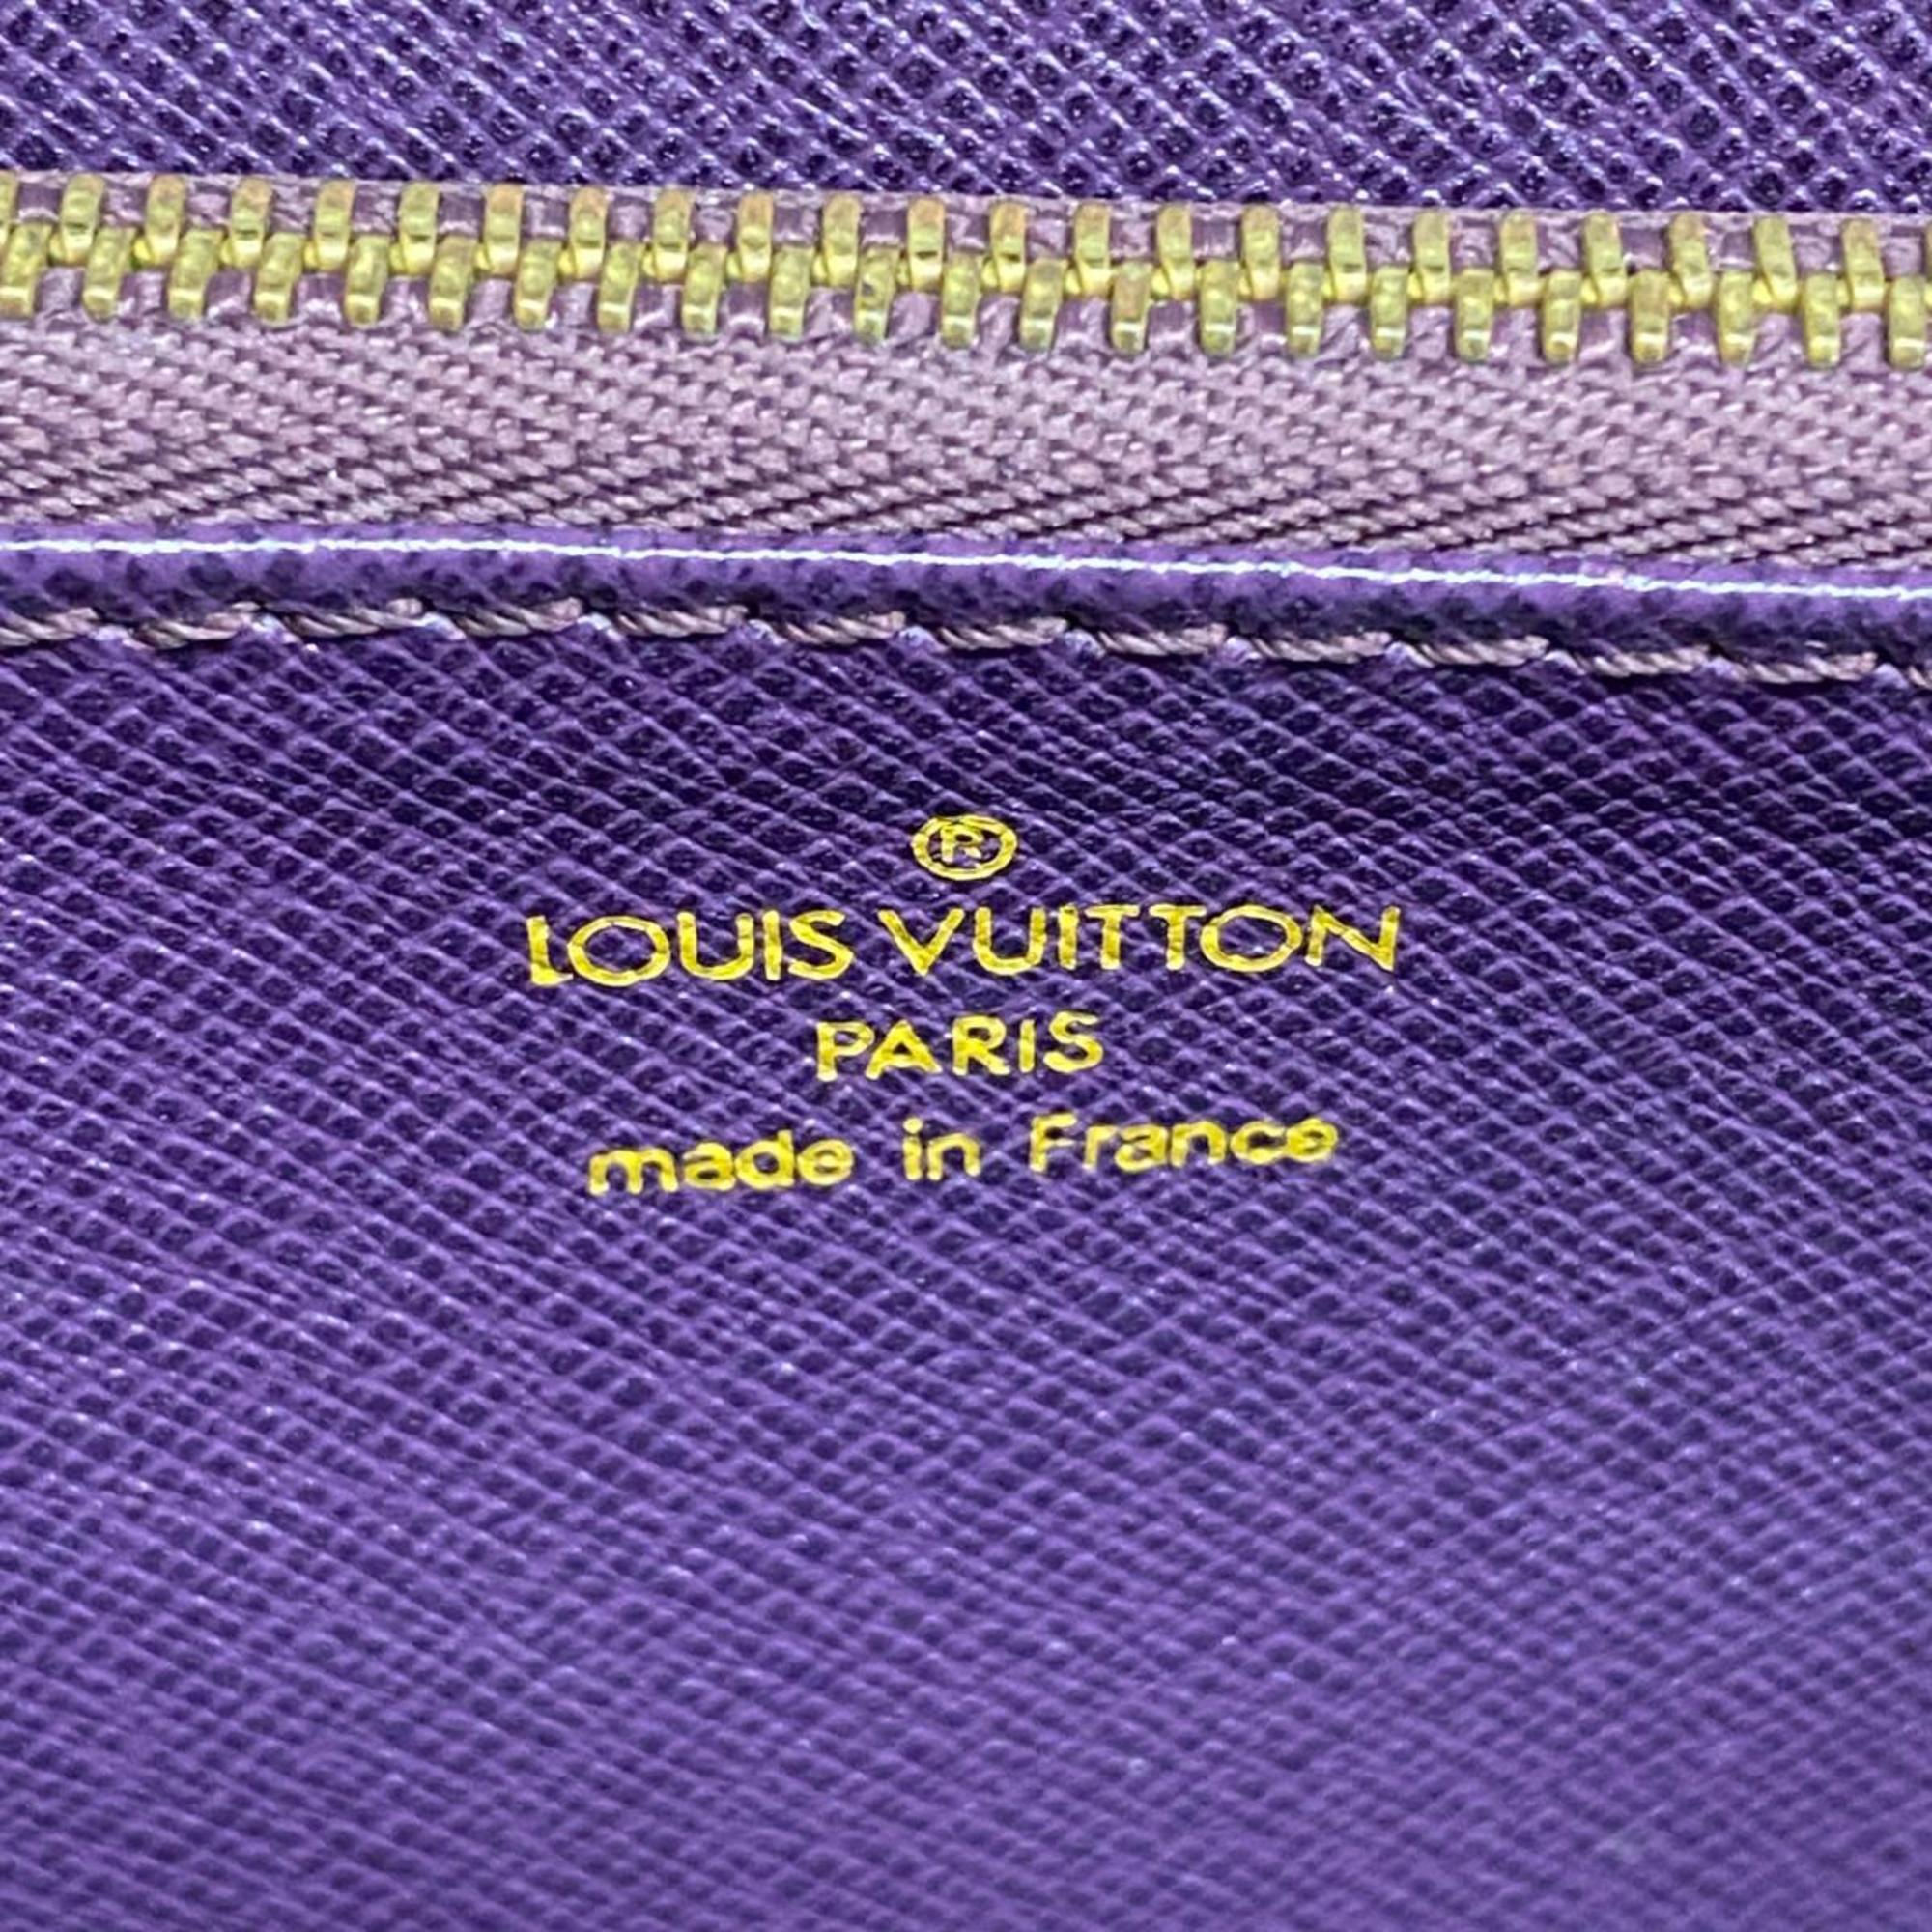 Louis Vuitton Epi Malesherbes Handbag M52379 Jaune Ladies